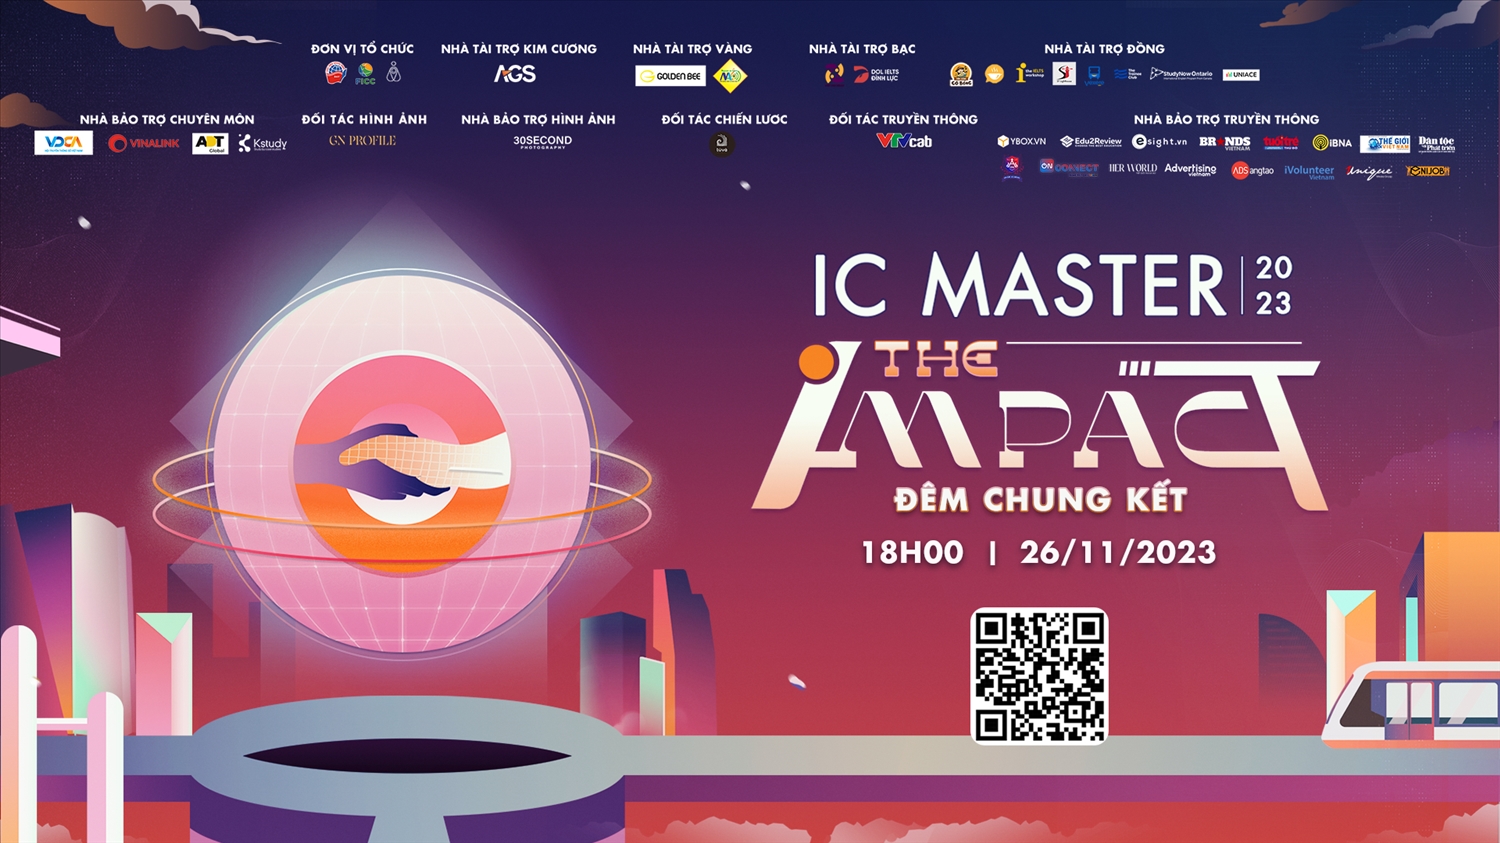 Chung kết cuộc thi Nhà Truyền Thông Tài Ba - IC Master mùa thứ 11 sẽ chính thức được diễn ra vào 17h00 ngày 26/11/2023 tại Học viện Ngoại giao